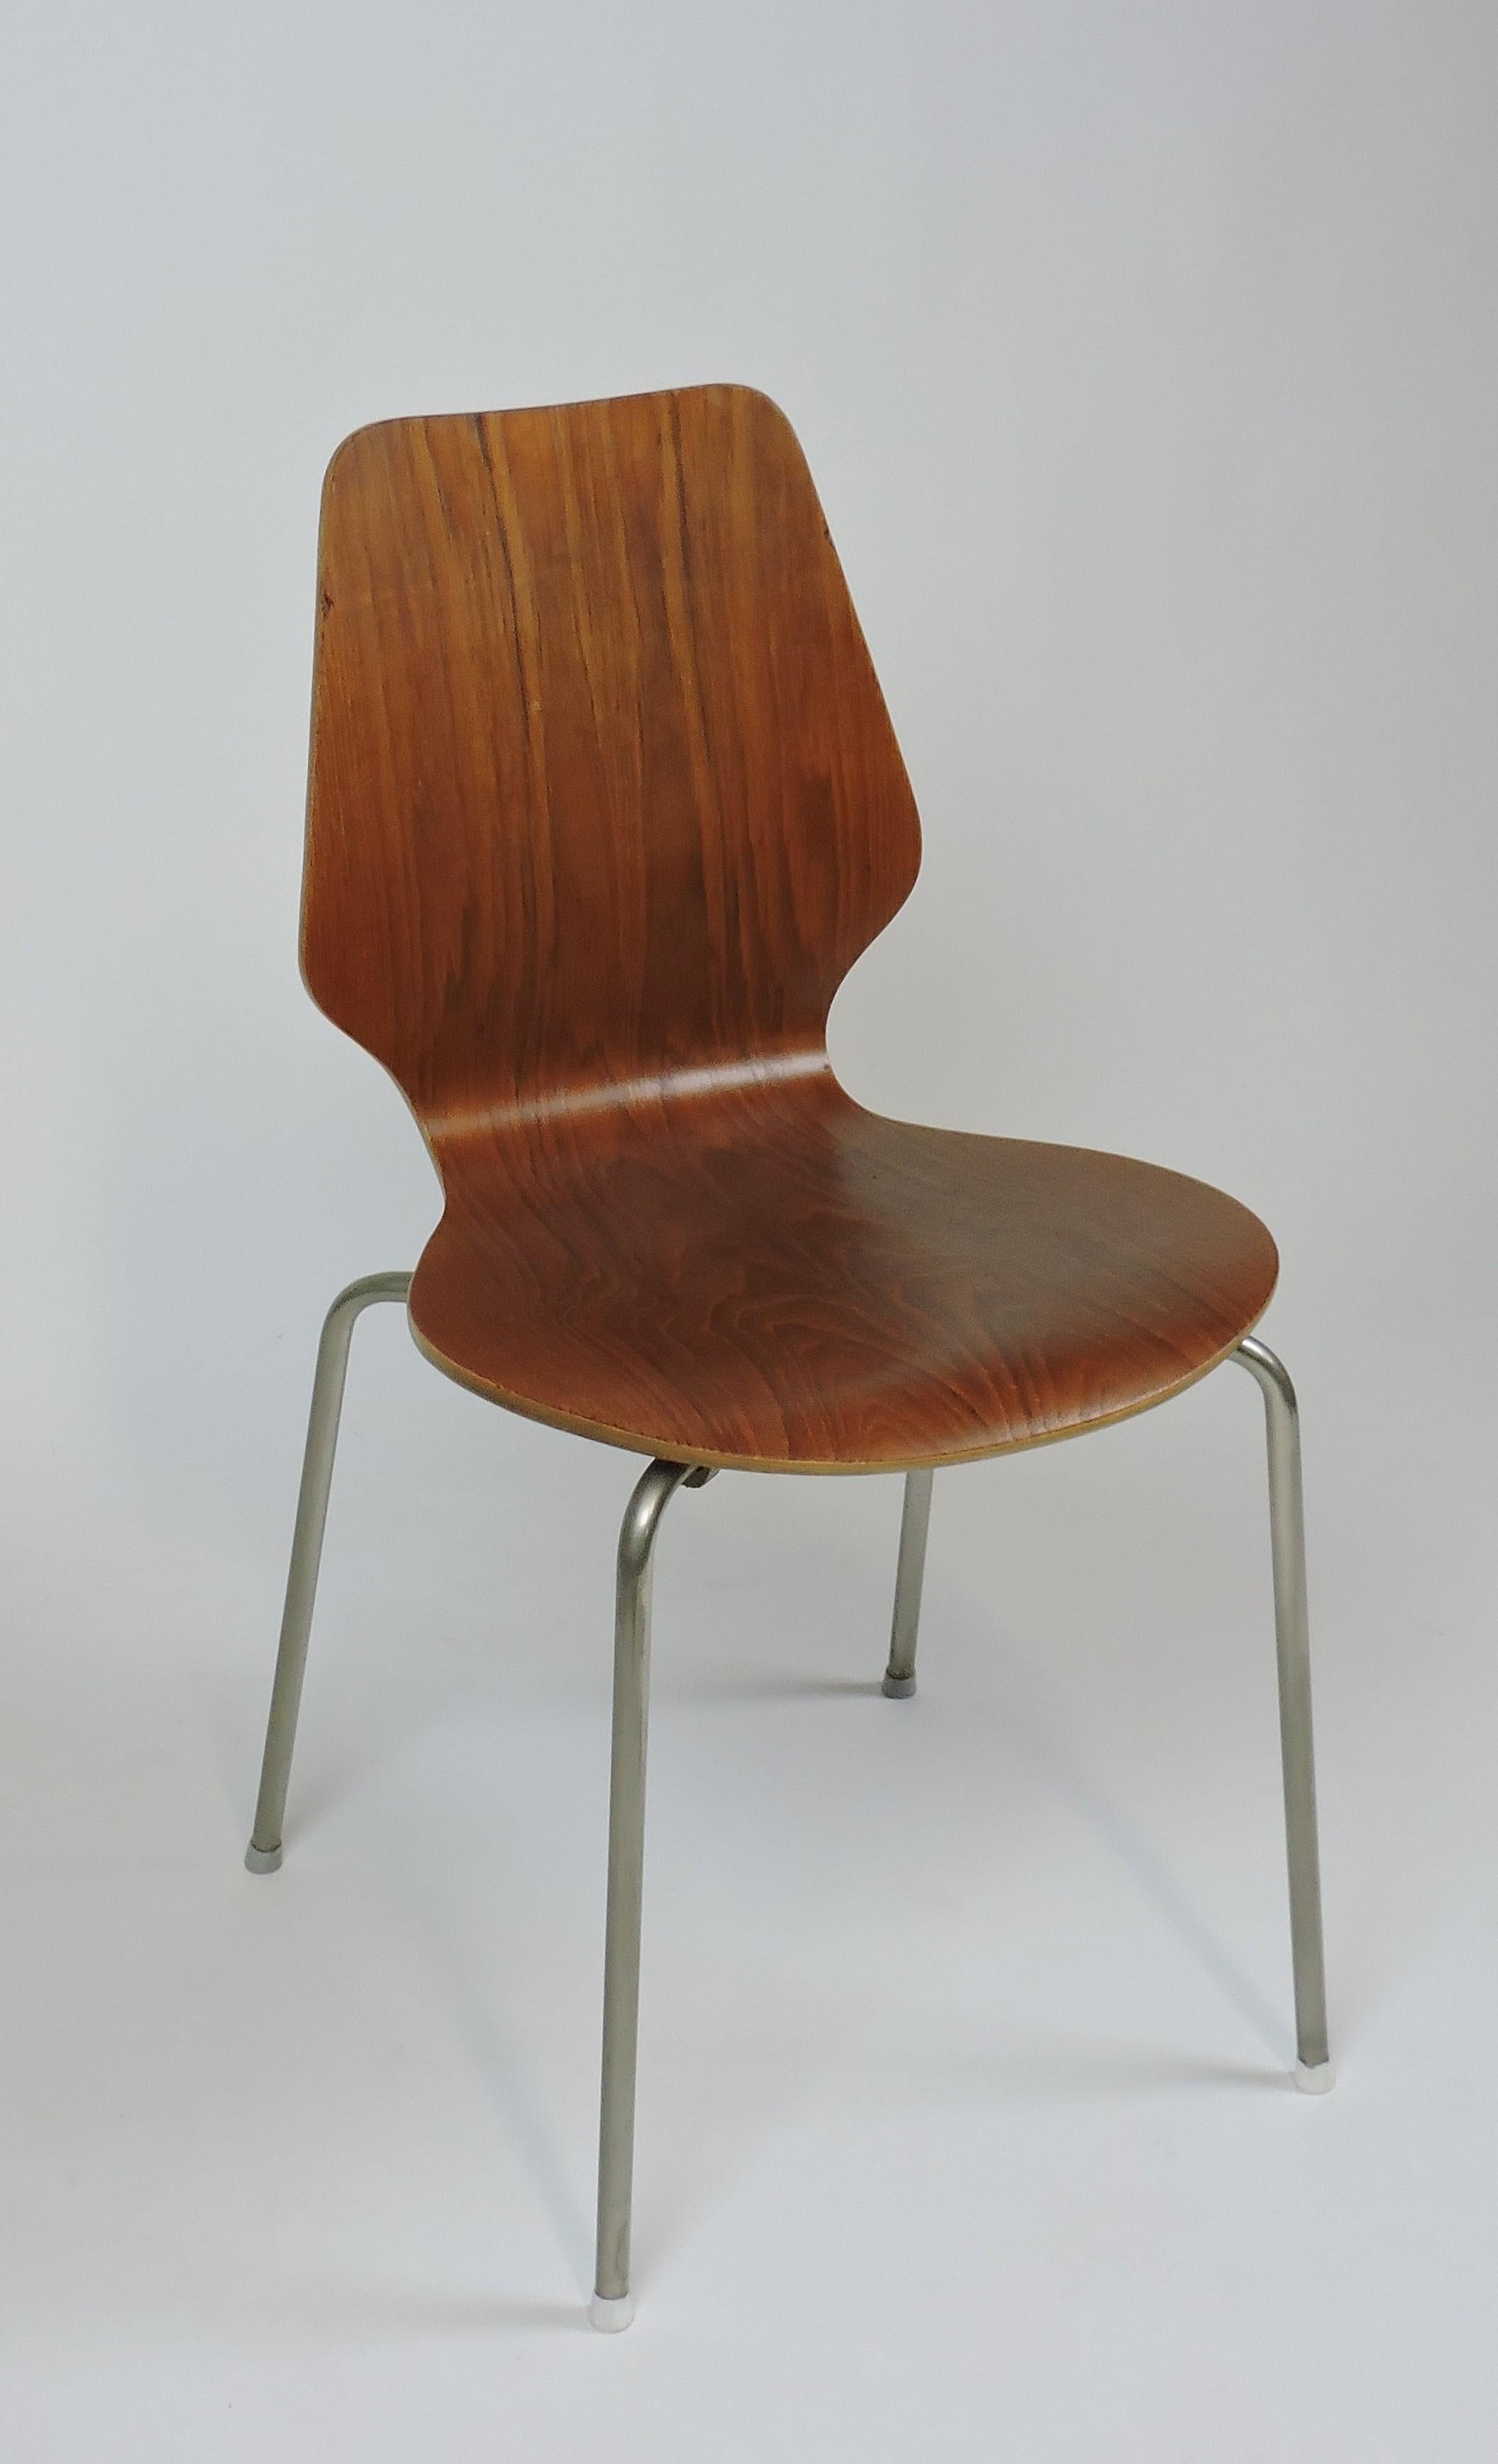 Chaise en bois courbé de style danois du milieu du siècle, avec pieds en métal. Léger et solide, avec un beau grain de bois. Fabriqué au Danemark, estampillé en dessous.